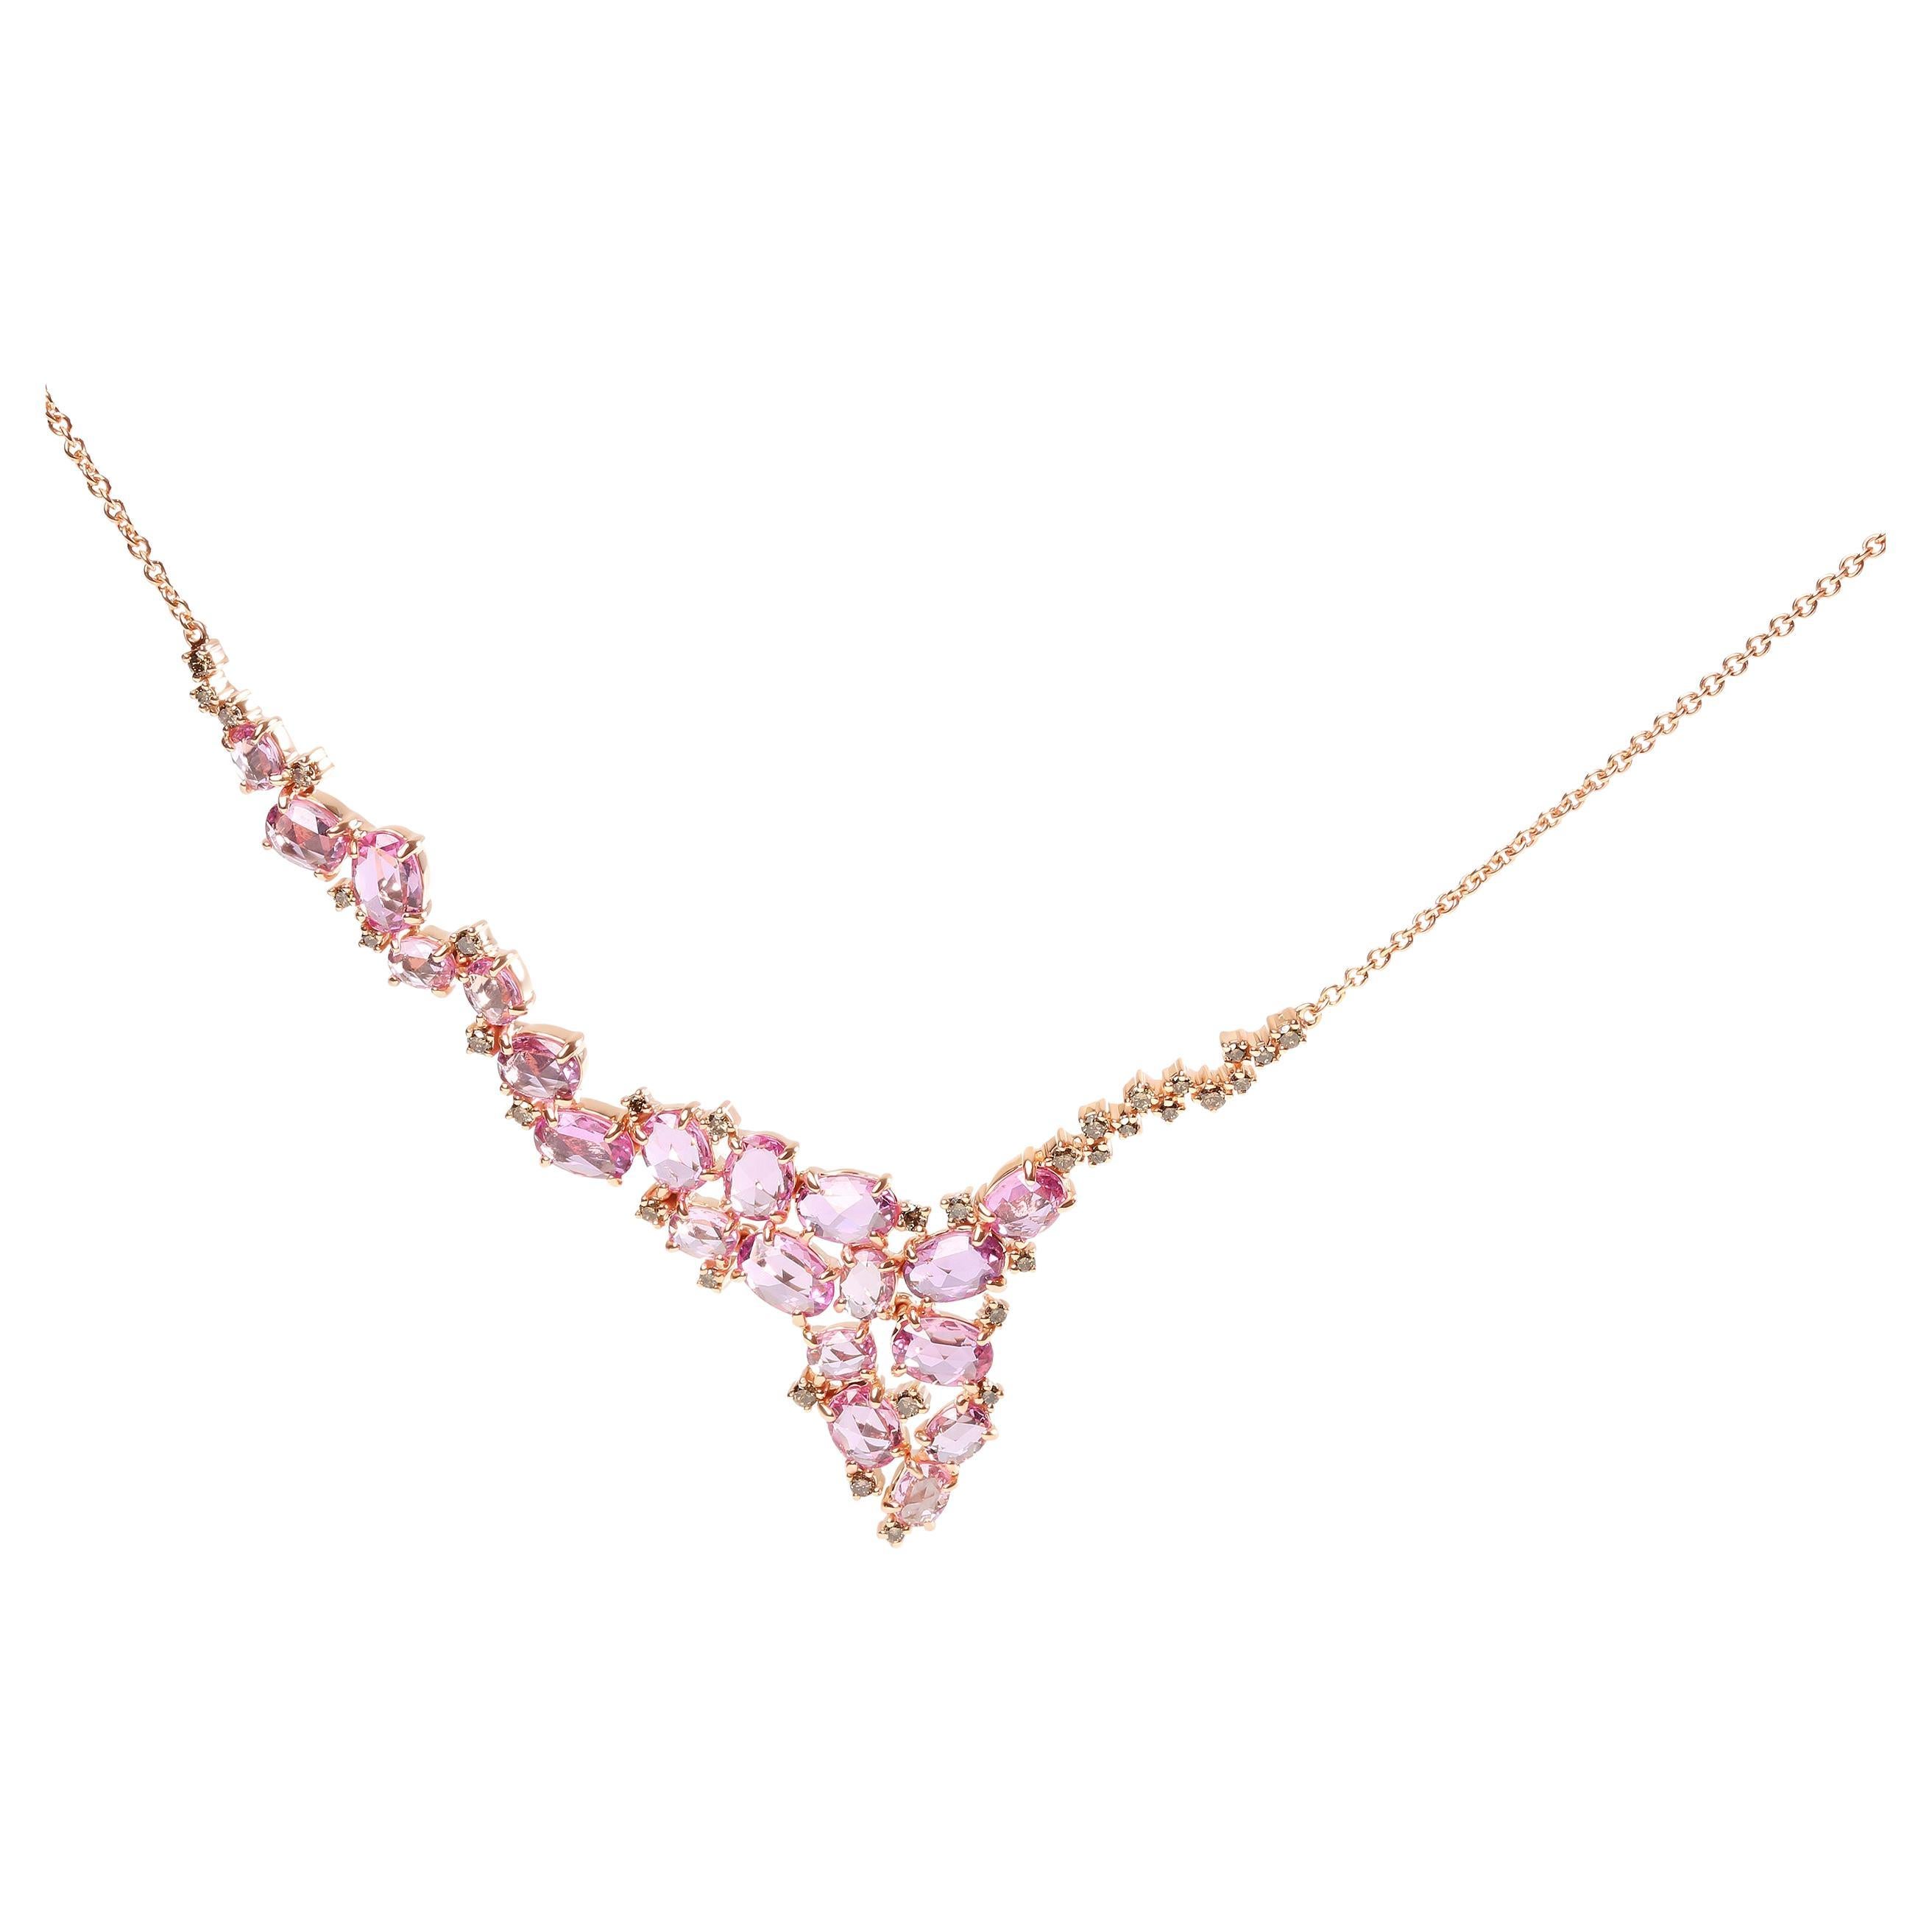 Halskette aus 18 Karat Roségold mit 1/2 Karat braunem Diamanten und ovalem rosa Saphir